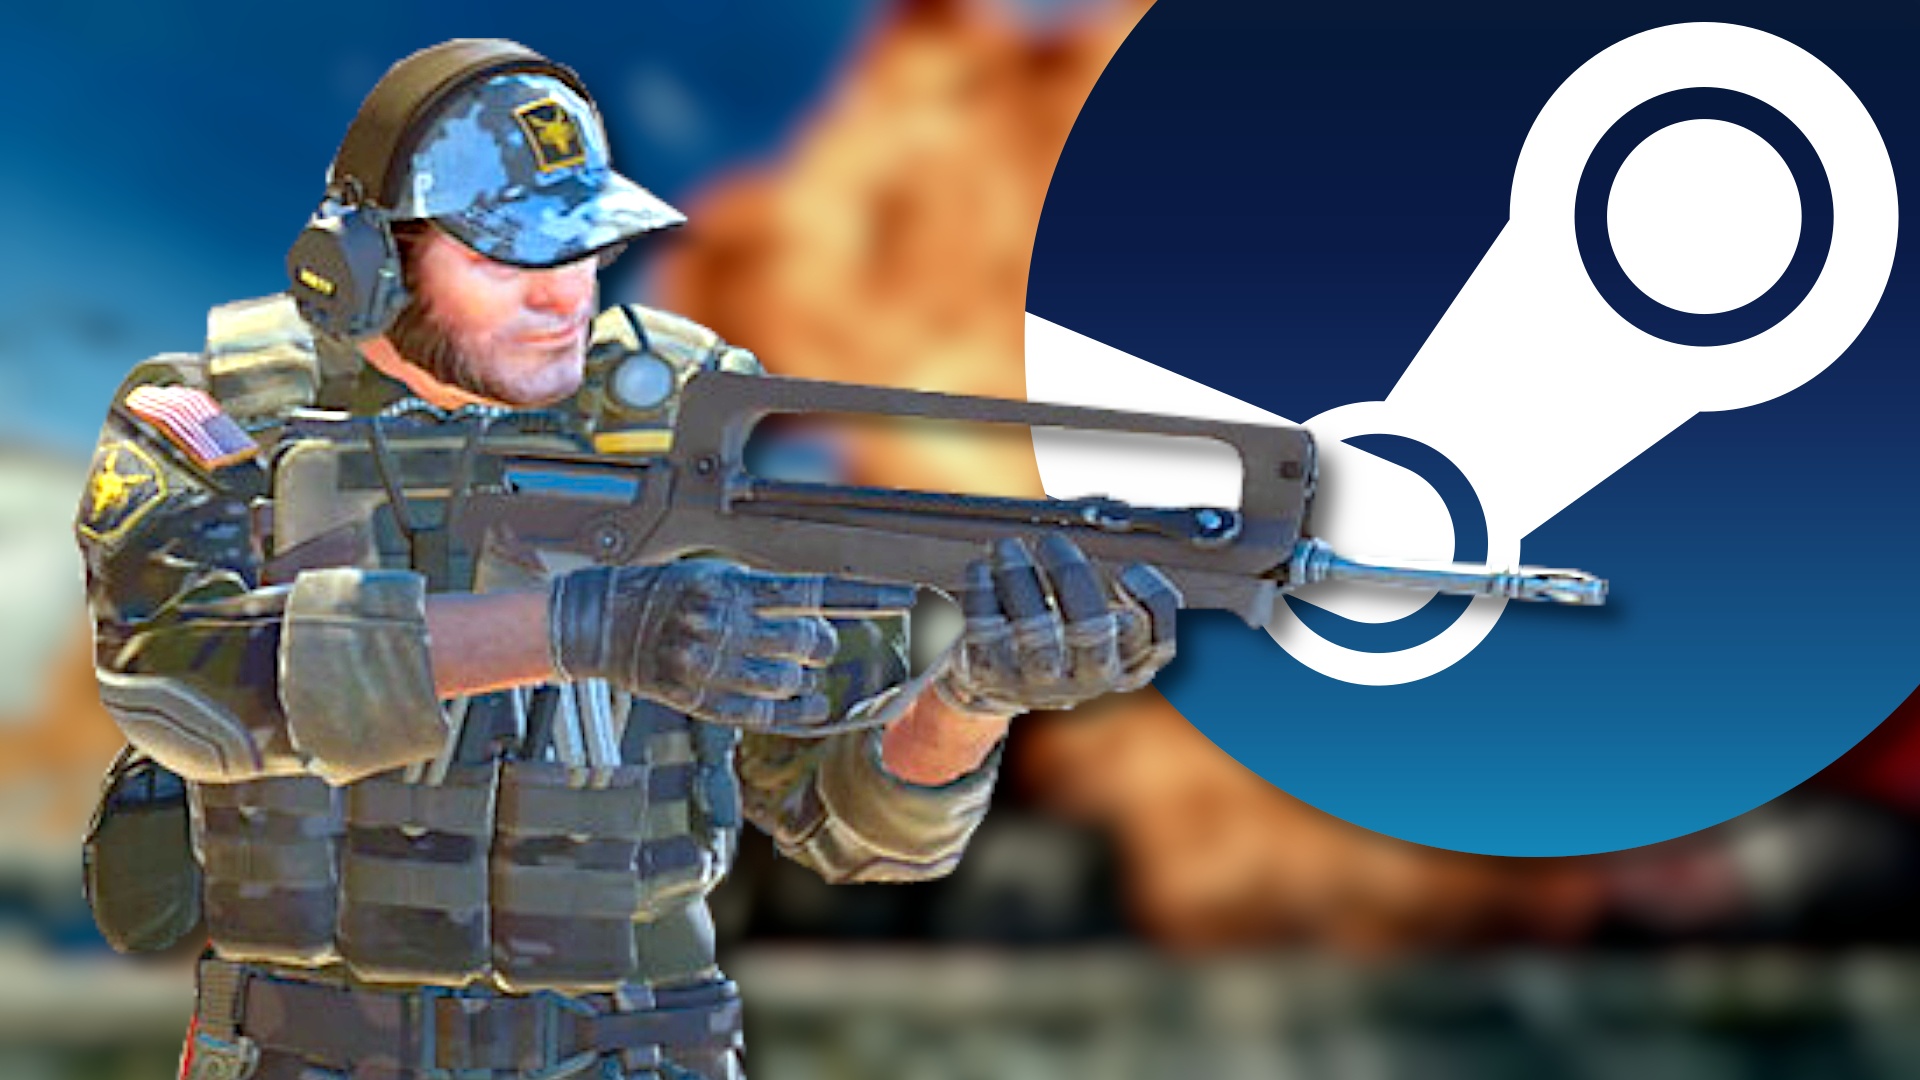 #Counter-Strike 2 ist jetzt da und erobert bereits die Steam-Charts